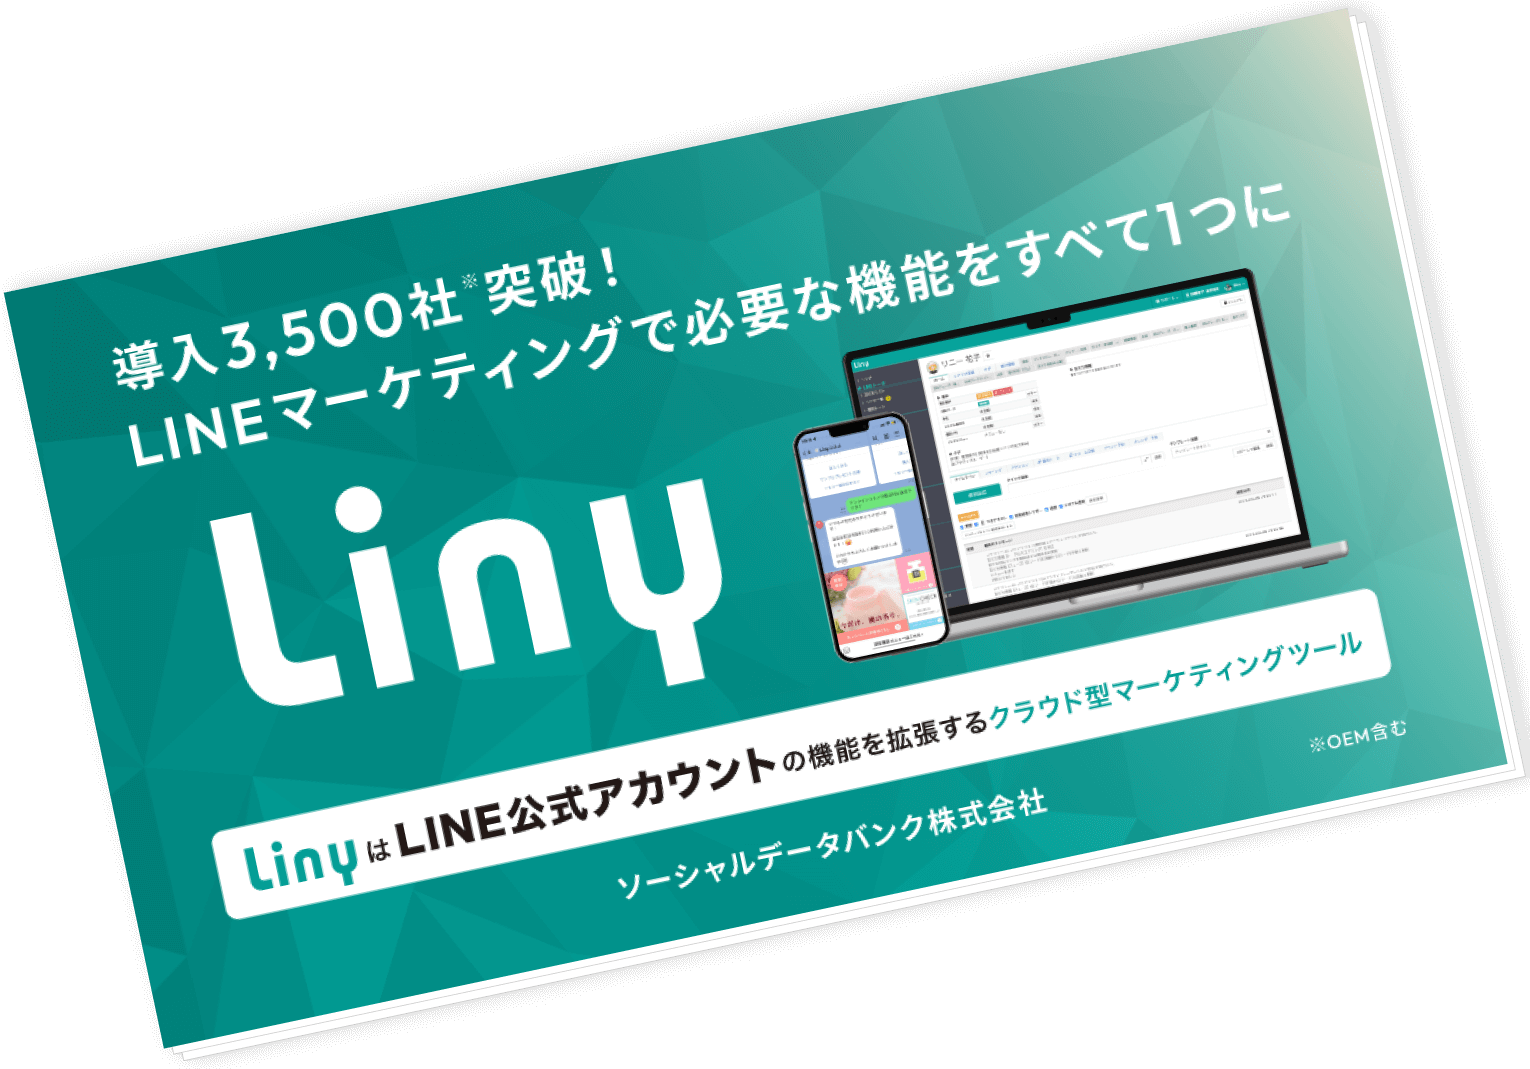 LINE公式アカウントの課題を解決するLinyについての説明資料